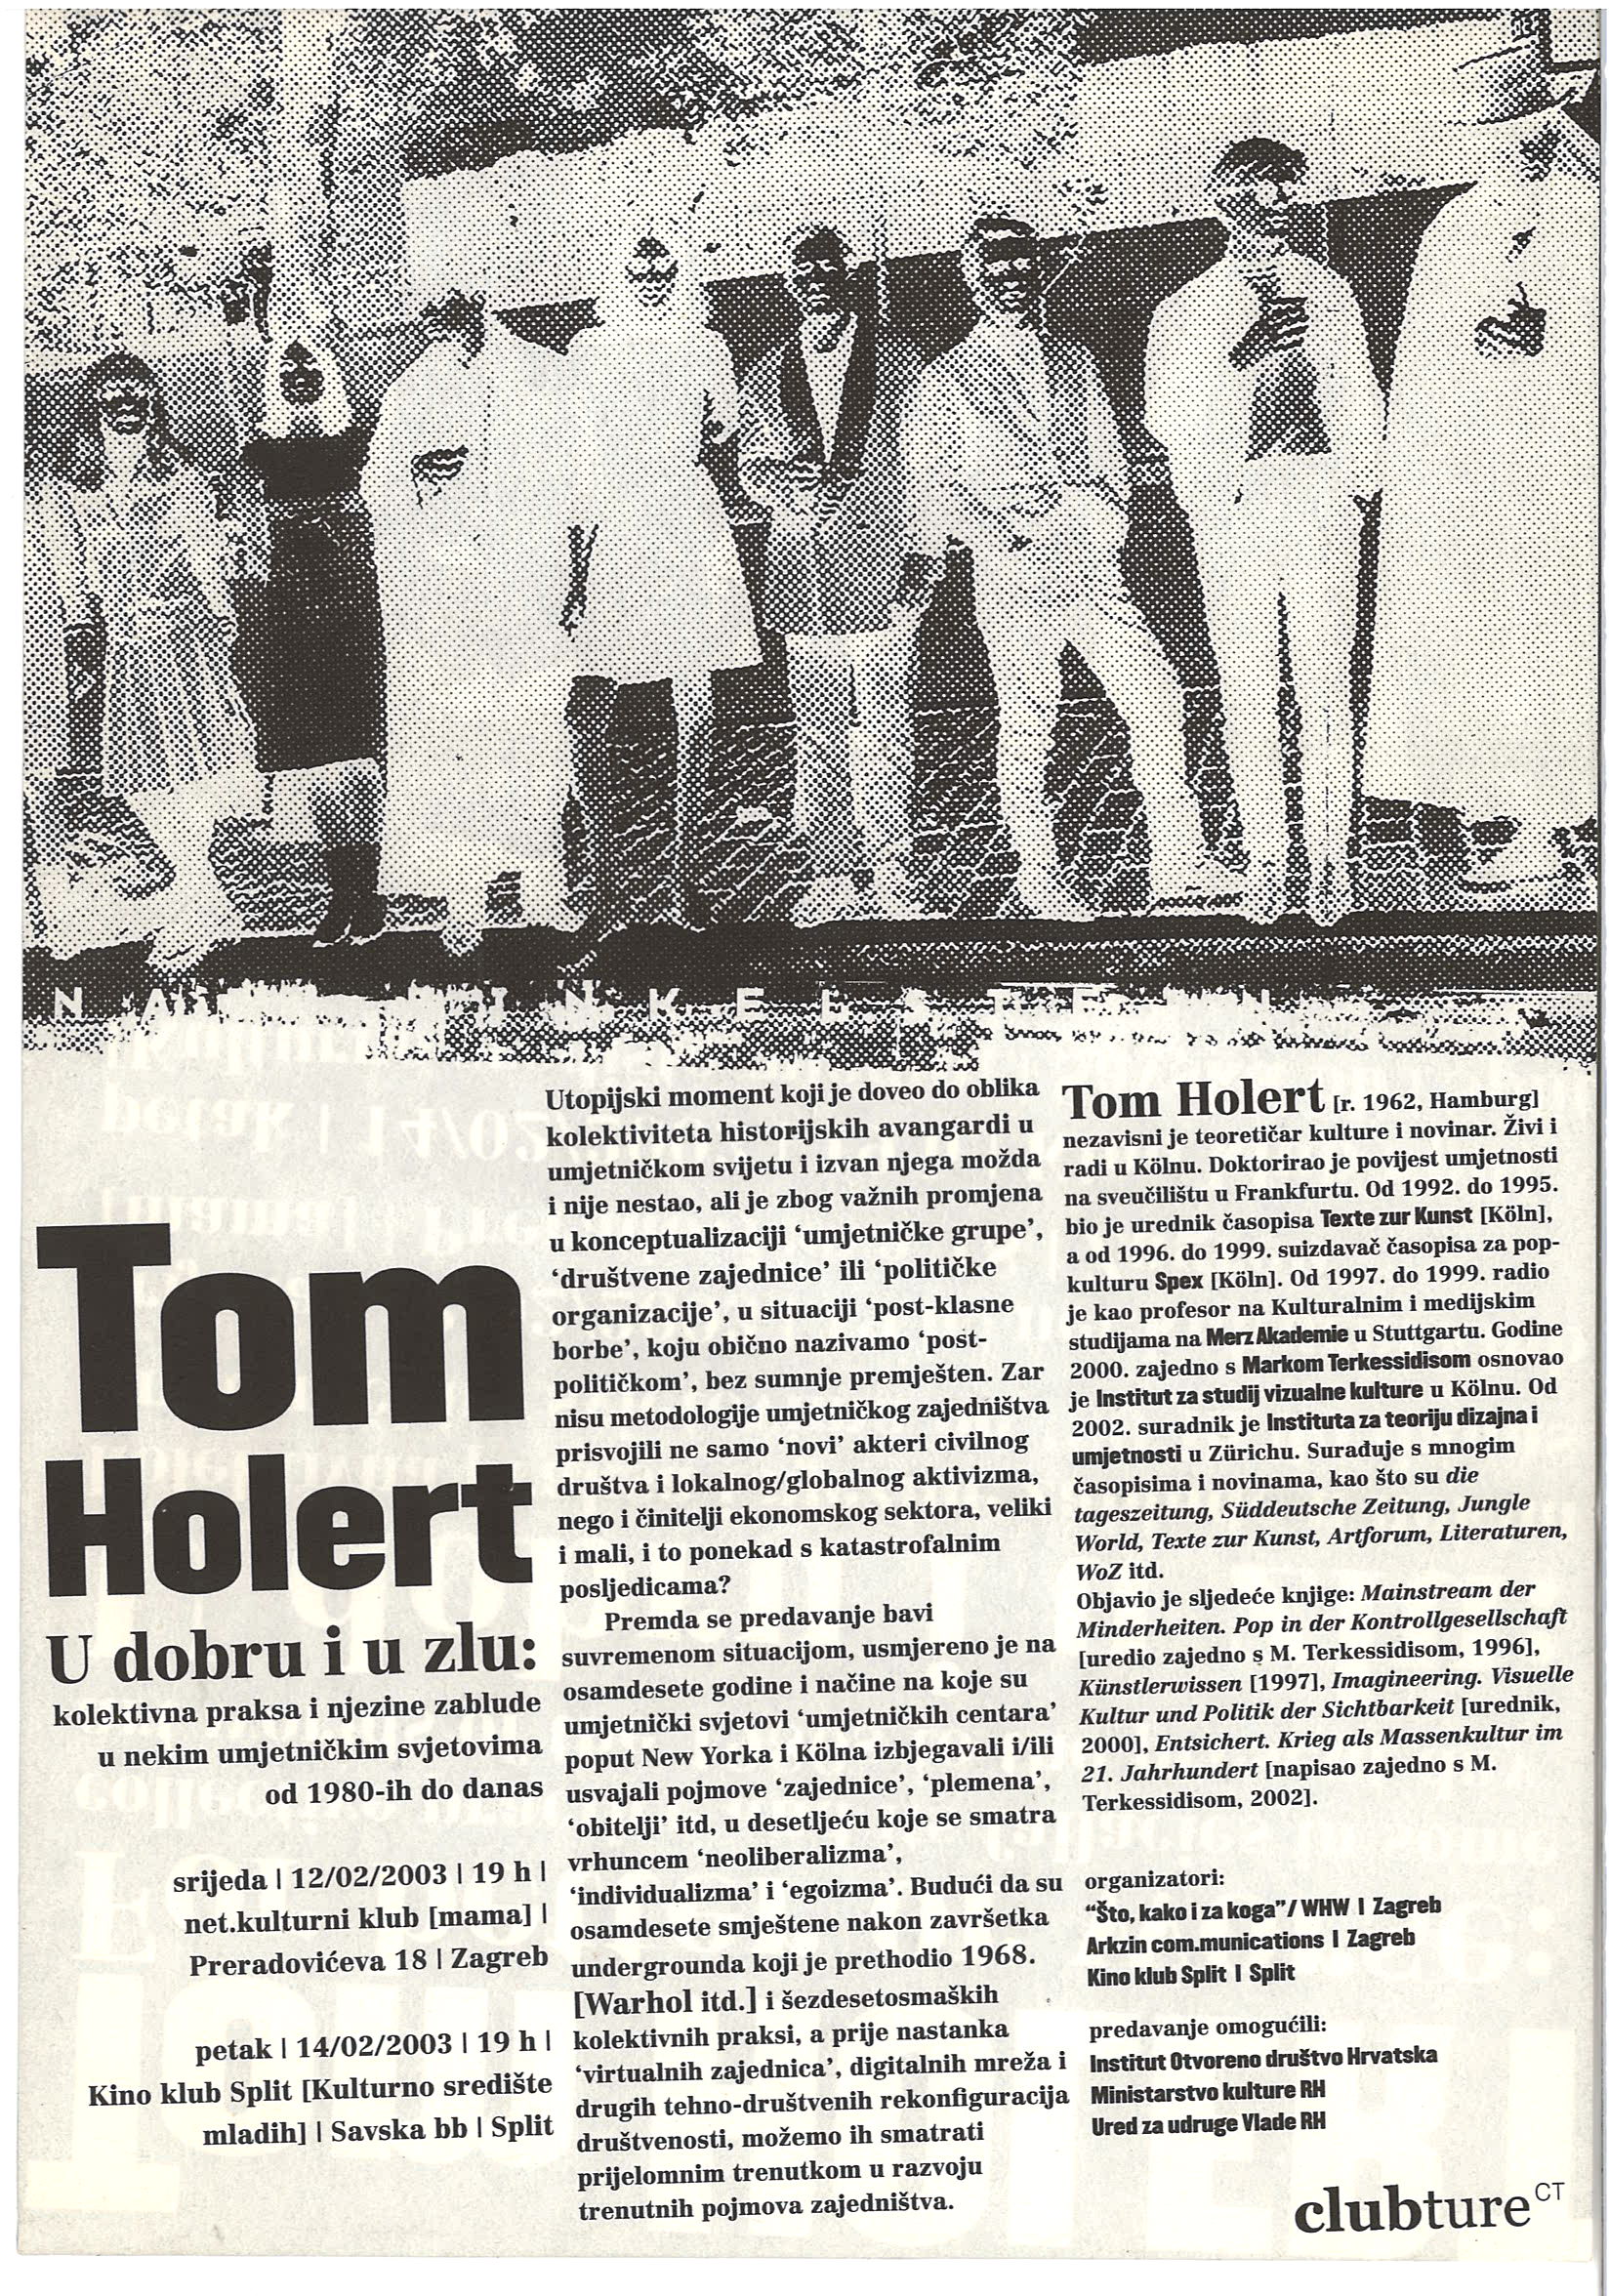 Tom holert   predavanje u dobru i u zlu  whw  2003 